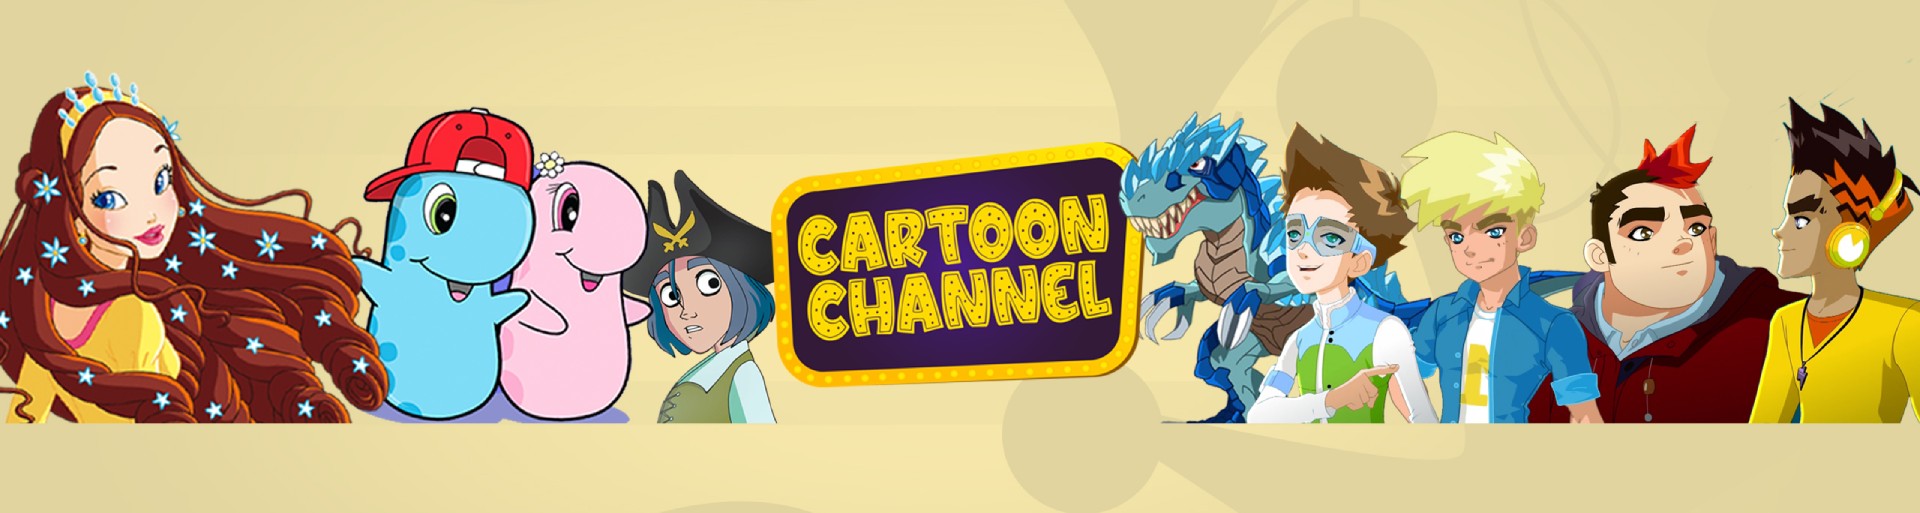 cartoon channel web